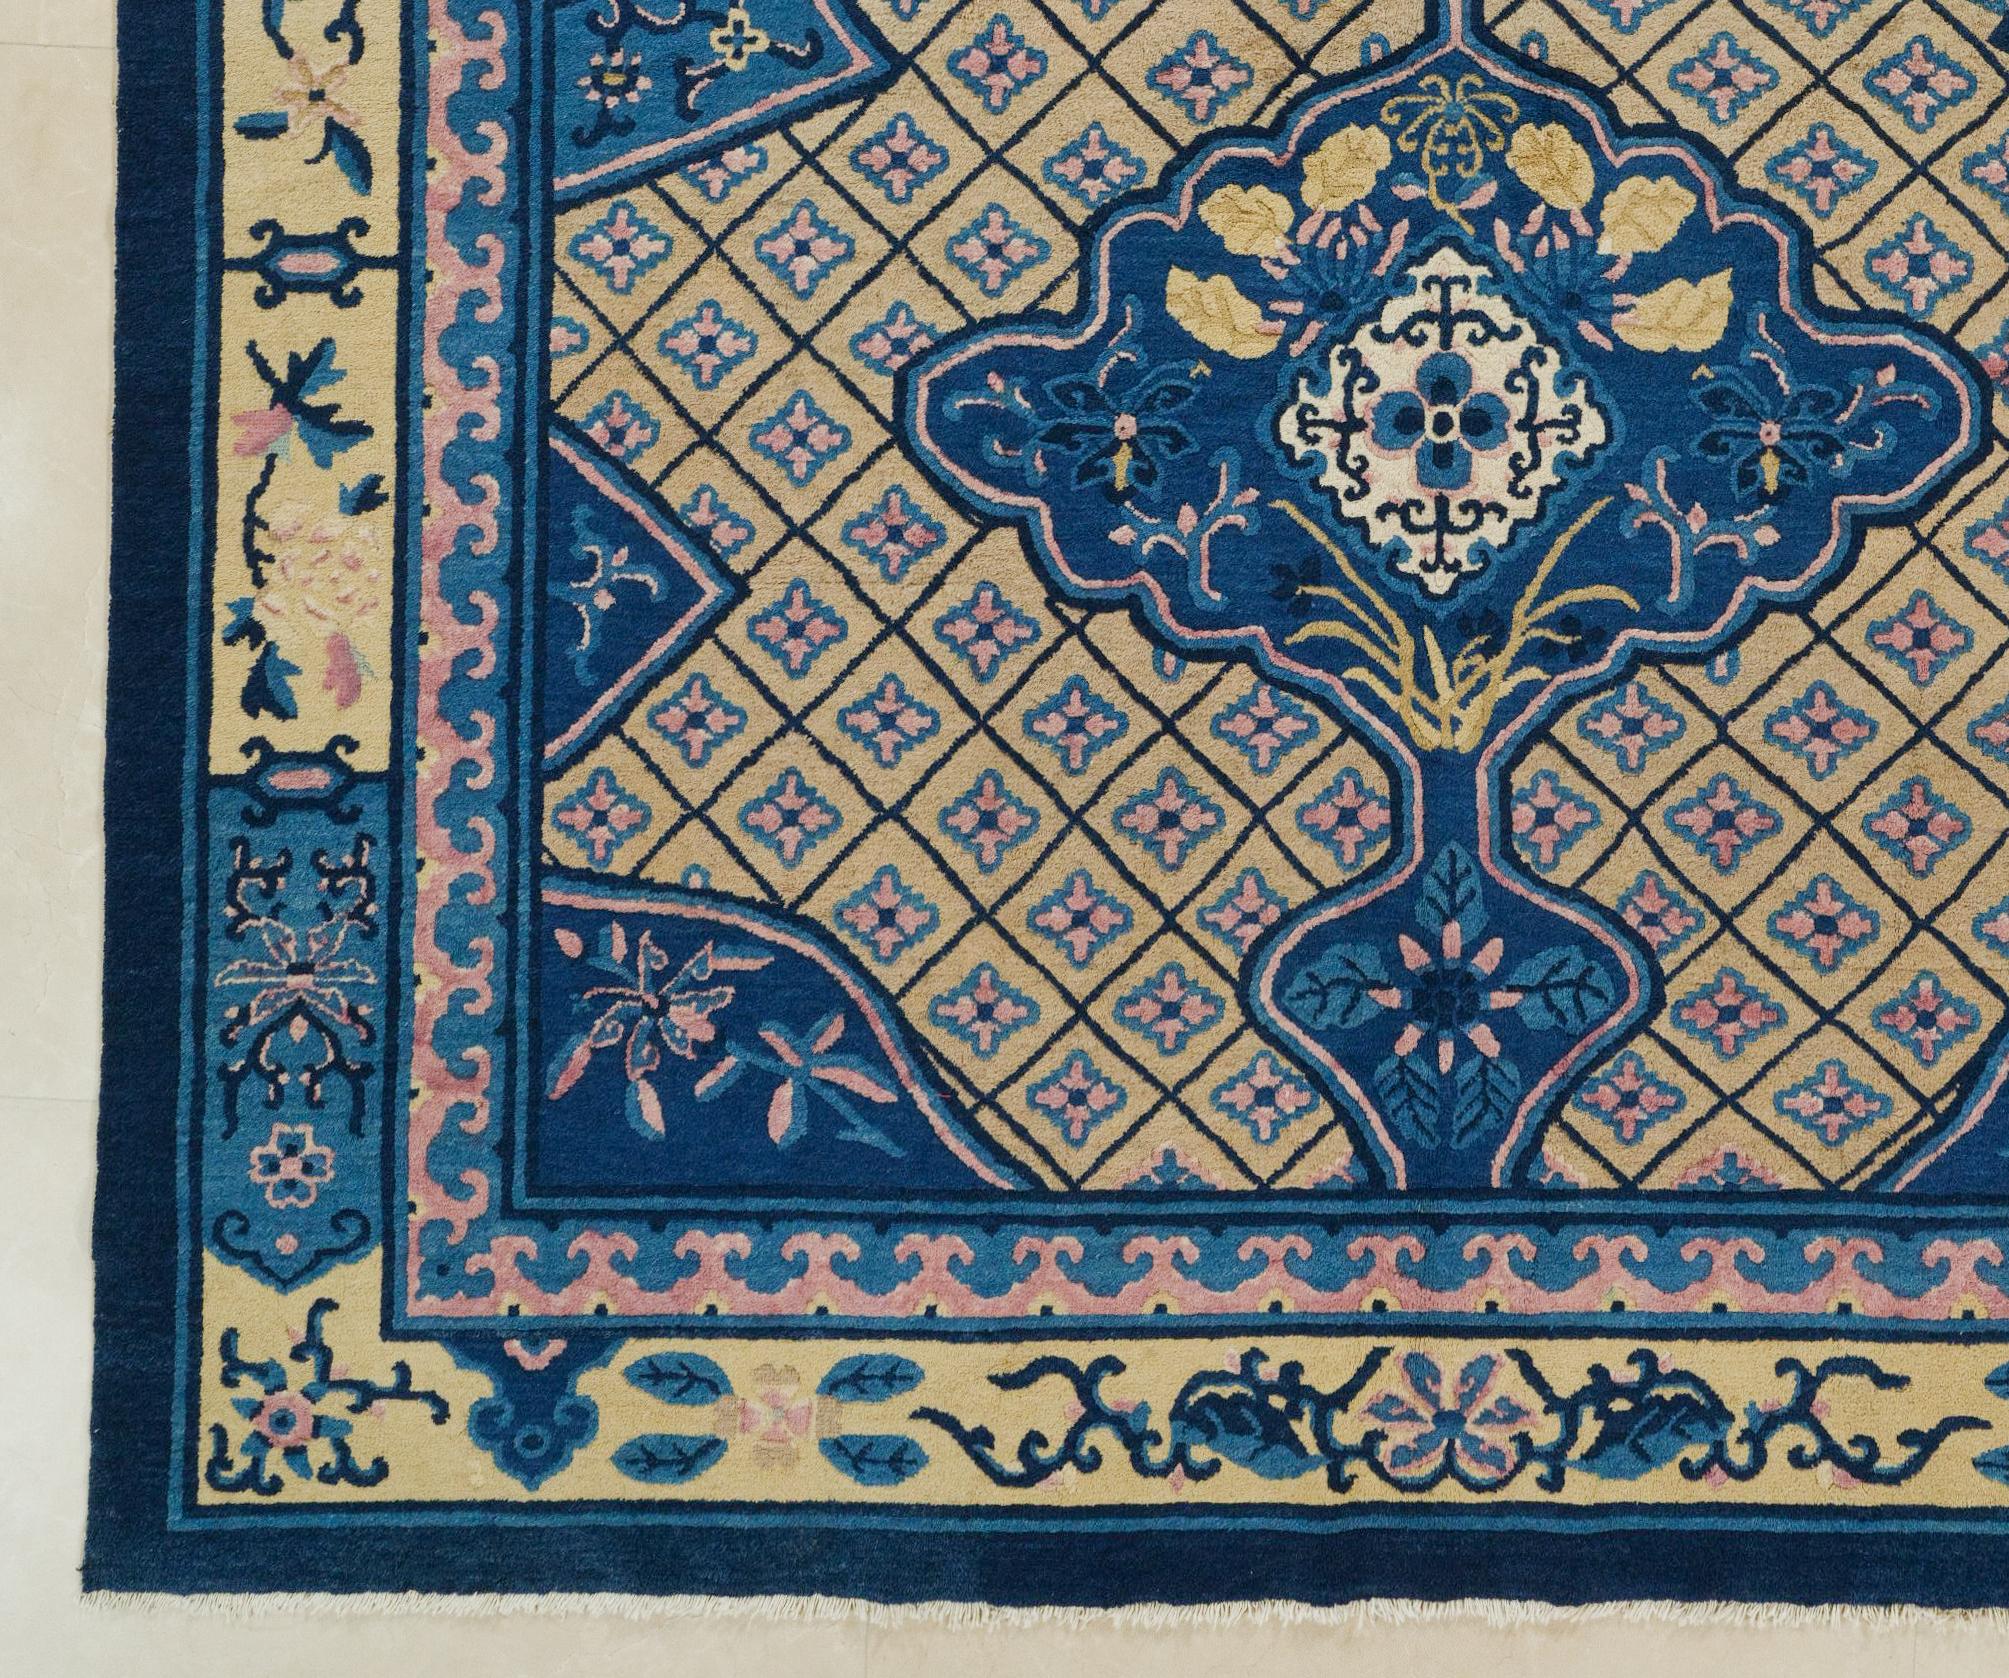 Antiker chinesischer Teppich aus dem späten 19. Jahrhundert, in perfektem Zustand und ohne Reparatur,

Vor langer, langer Zeit wurden die ersten Teppiche für den kaiserlichen Hof in China hergestellt. Das war vor etwa 2.000 Jahren. Die antiken